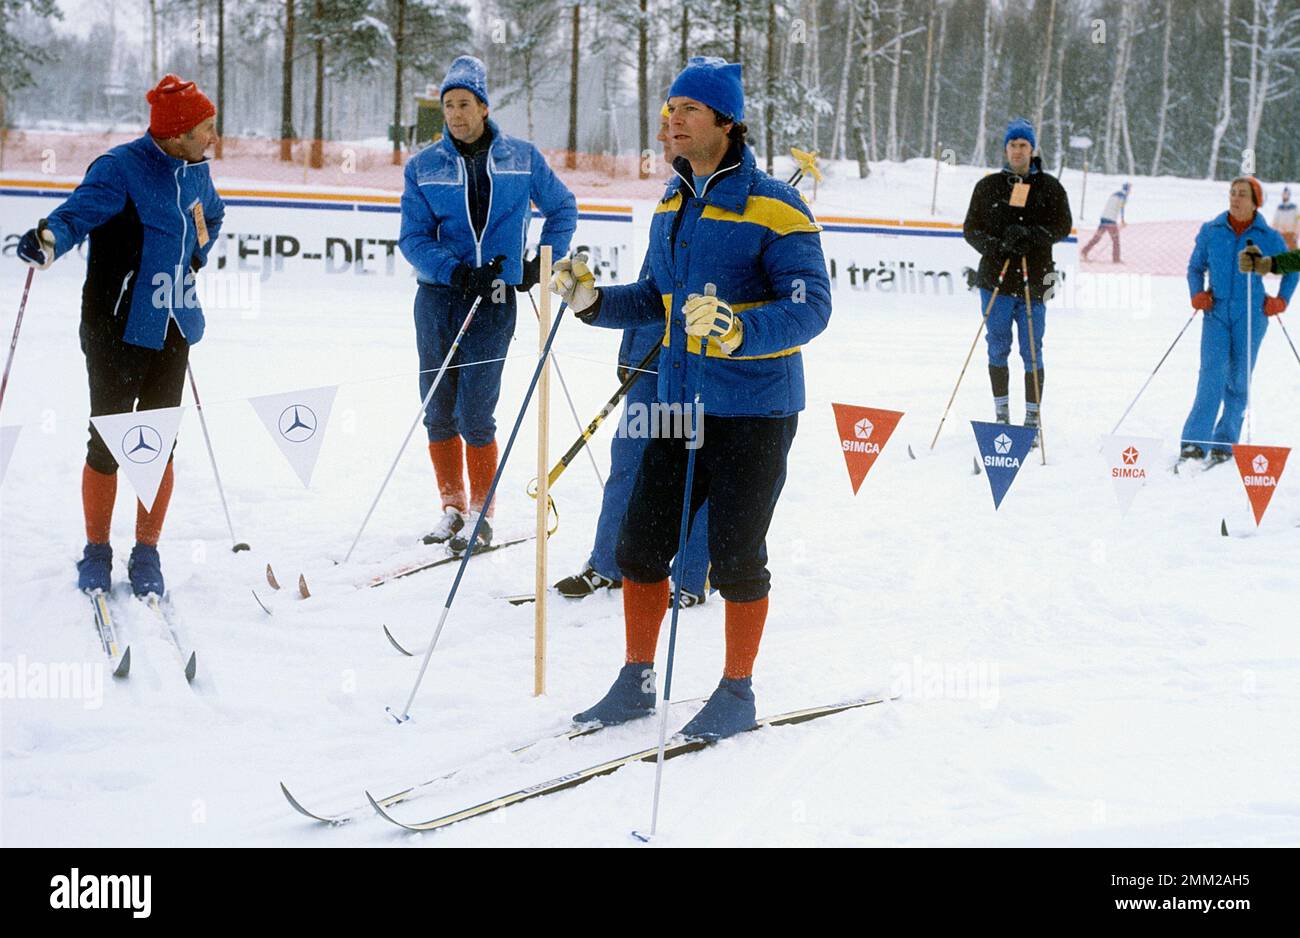 Carl XVI Gustaf, roi de Suède. Né le 30 avril 1946. Photo pendant les championnats de ski suédois à Mora 1979. Banque D'Images